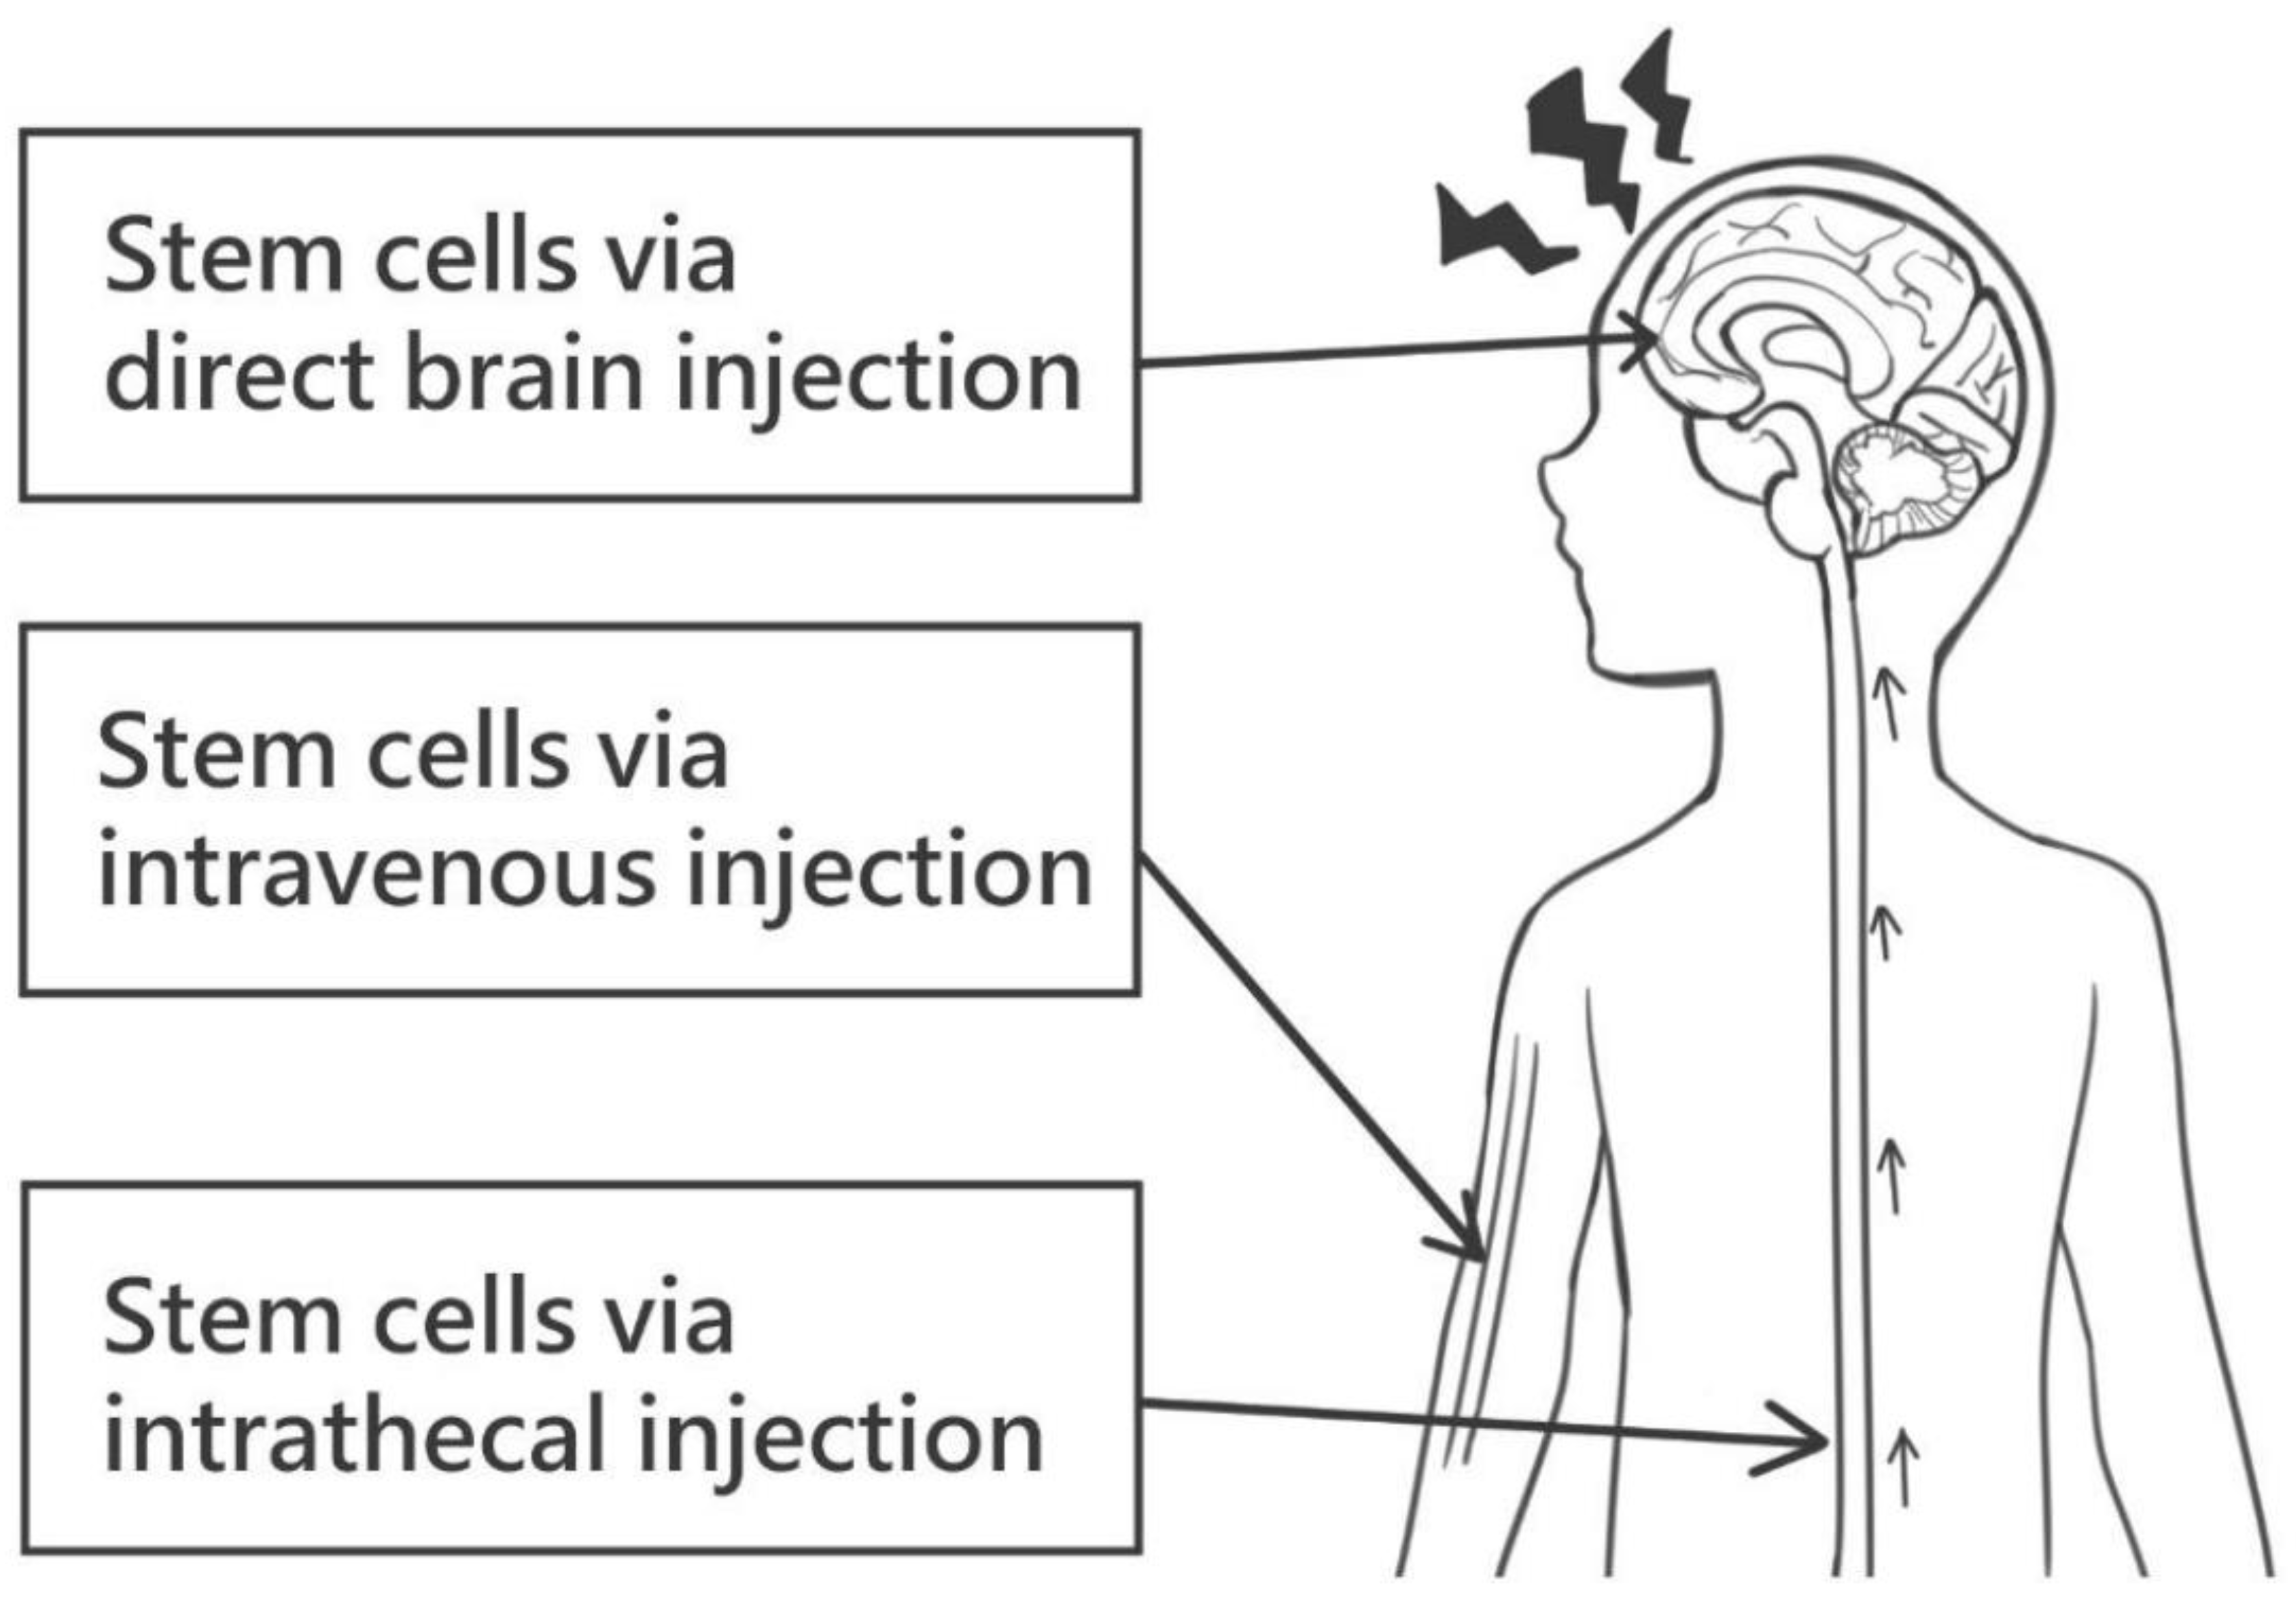 图1：干细胞给药的各种途径。这些可能包括直接脑注射、静脉注射和鞘内注射。